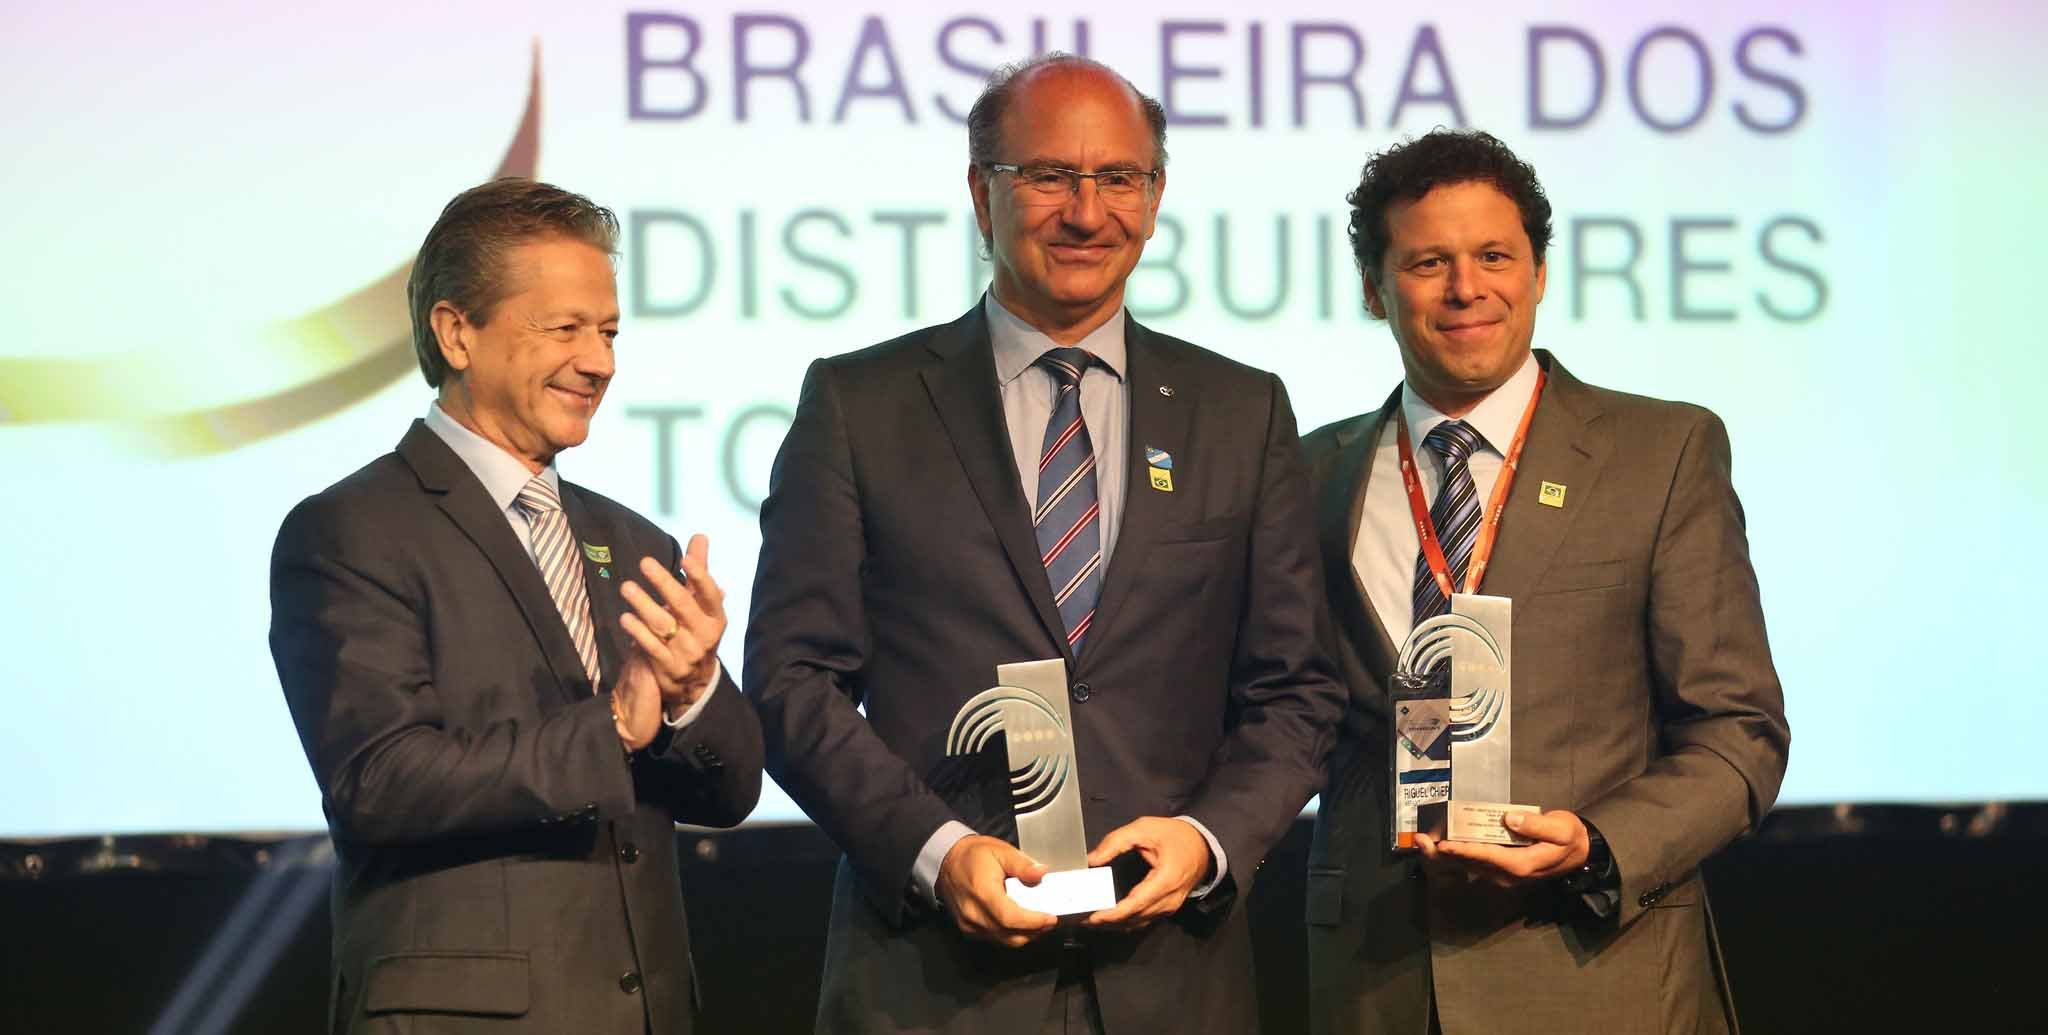 ABRALIB - Associação Brasileira Dos Distribuidores Librelato